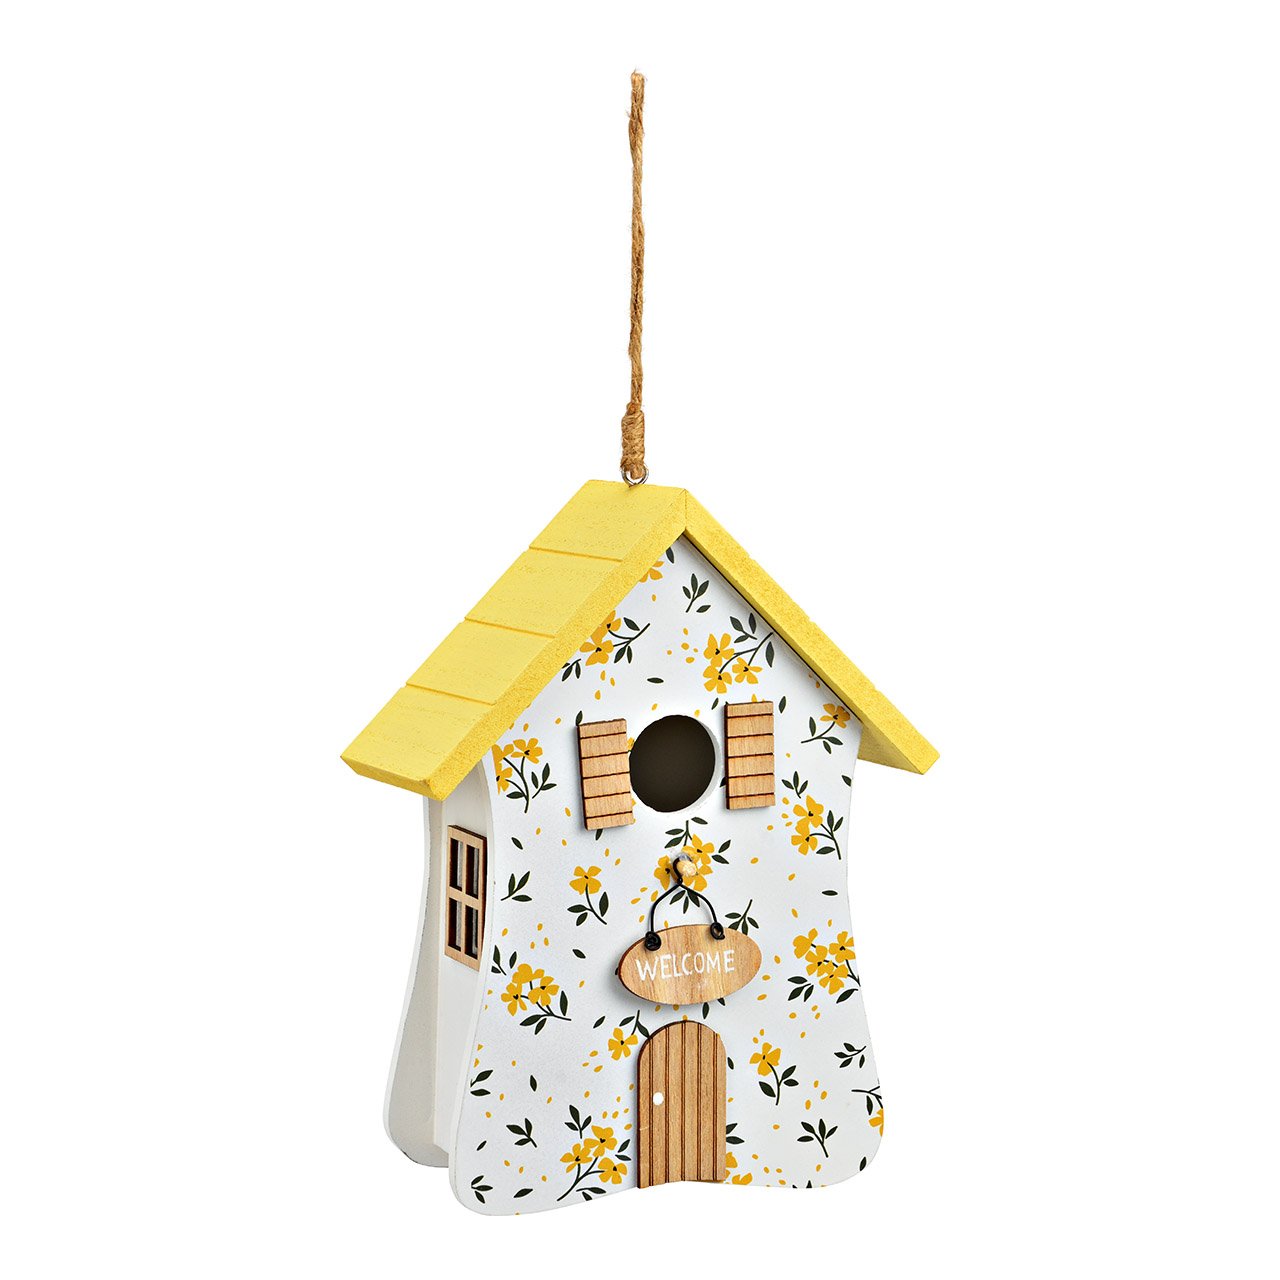 Casa colgante, decoración floral, de madera amarillo/blanco (A/A/A) 15x22x8cm